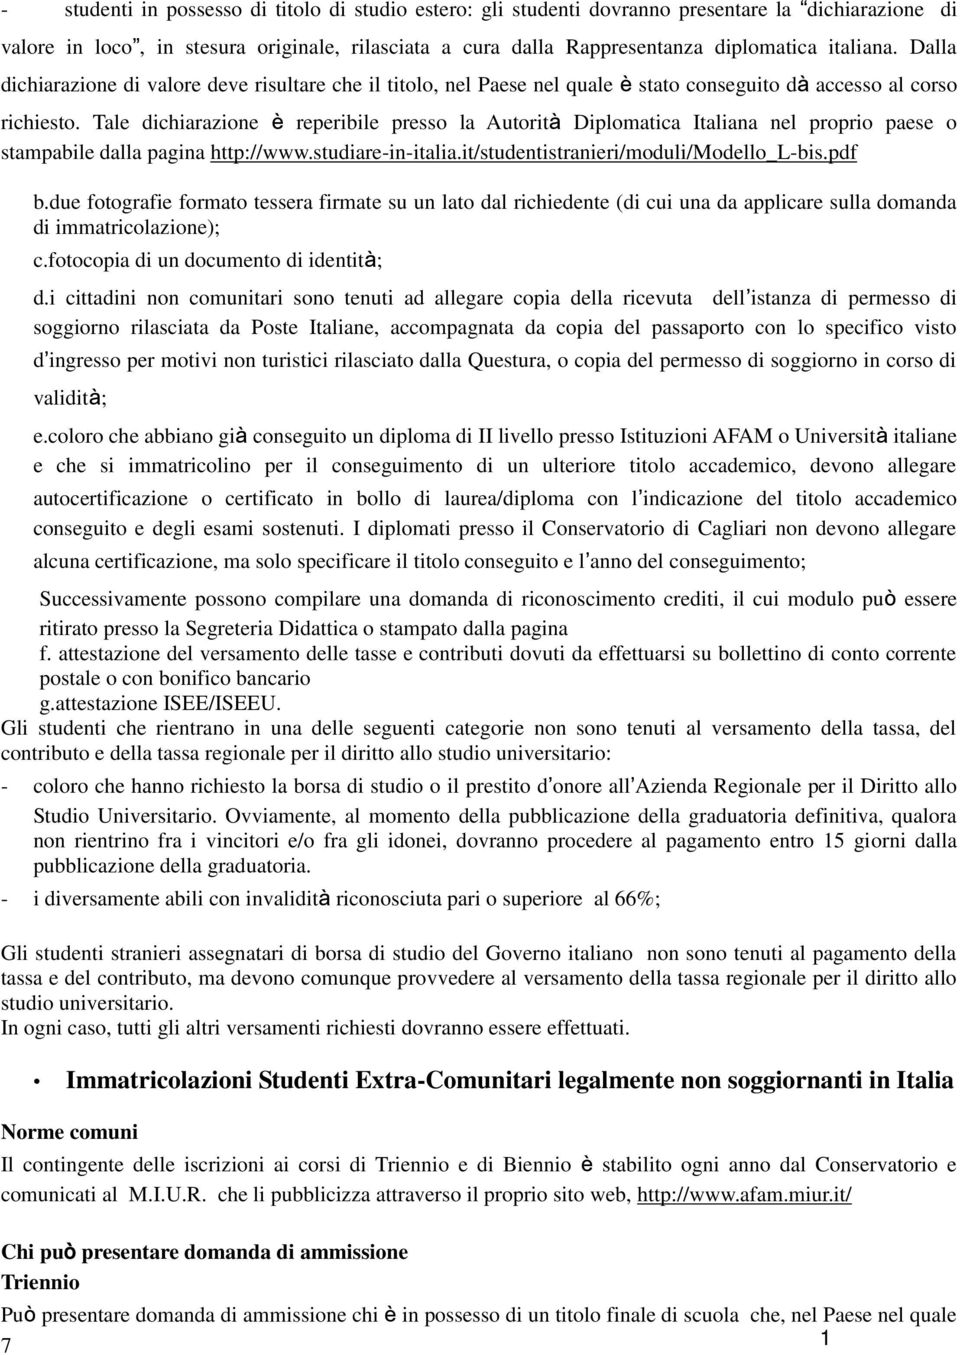 Tale dichiarazione è reperibile presso la Autorità Diplomatica Italiana nel proprio paese o stampabile dalla pagina http://www.studiare-in-italia.it/studentistranieri/moduli/modello_l-bis.pdf b.